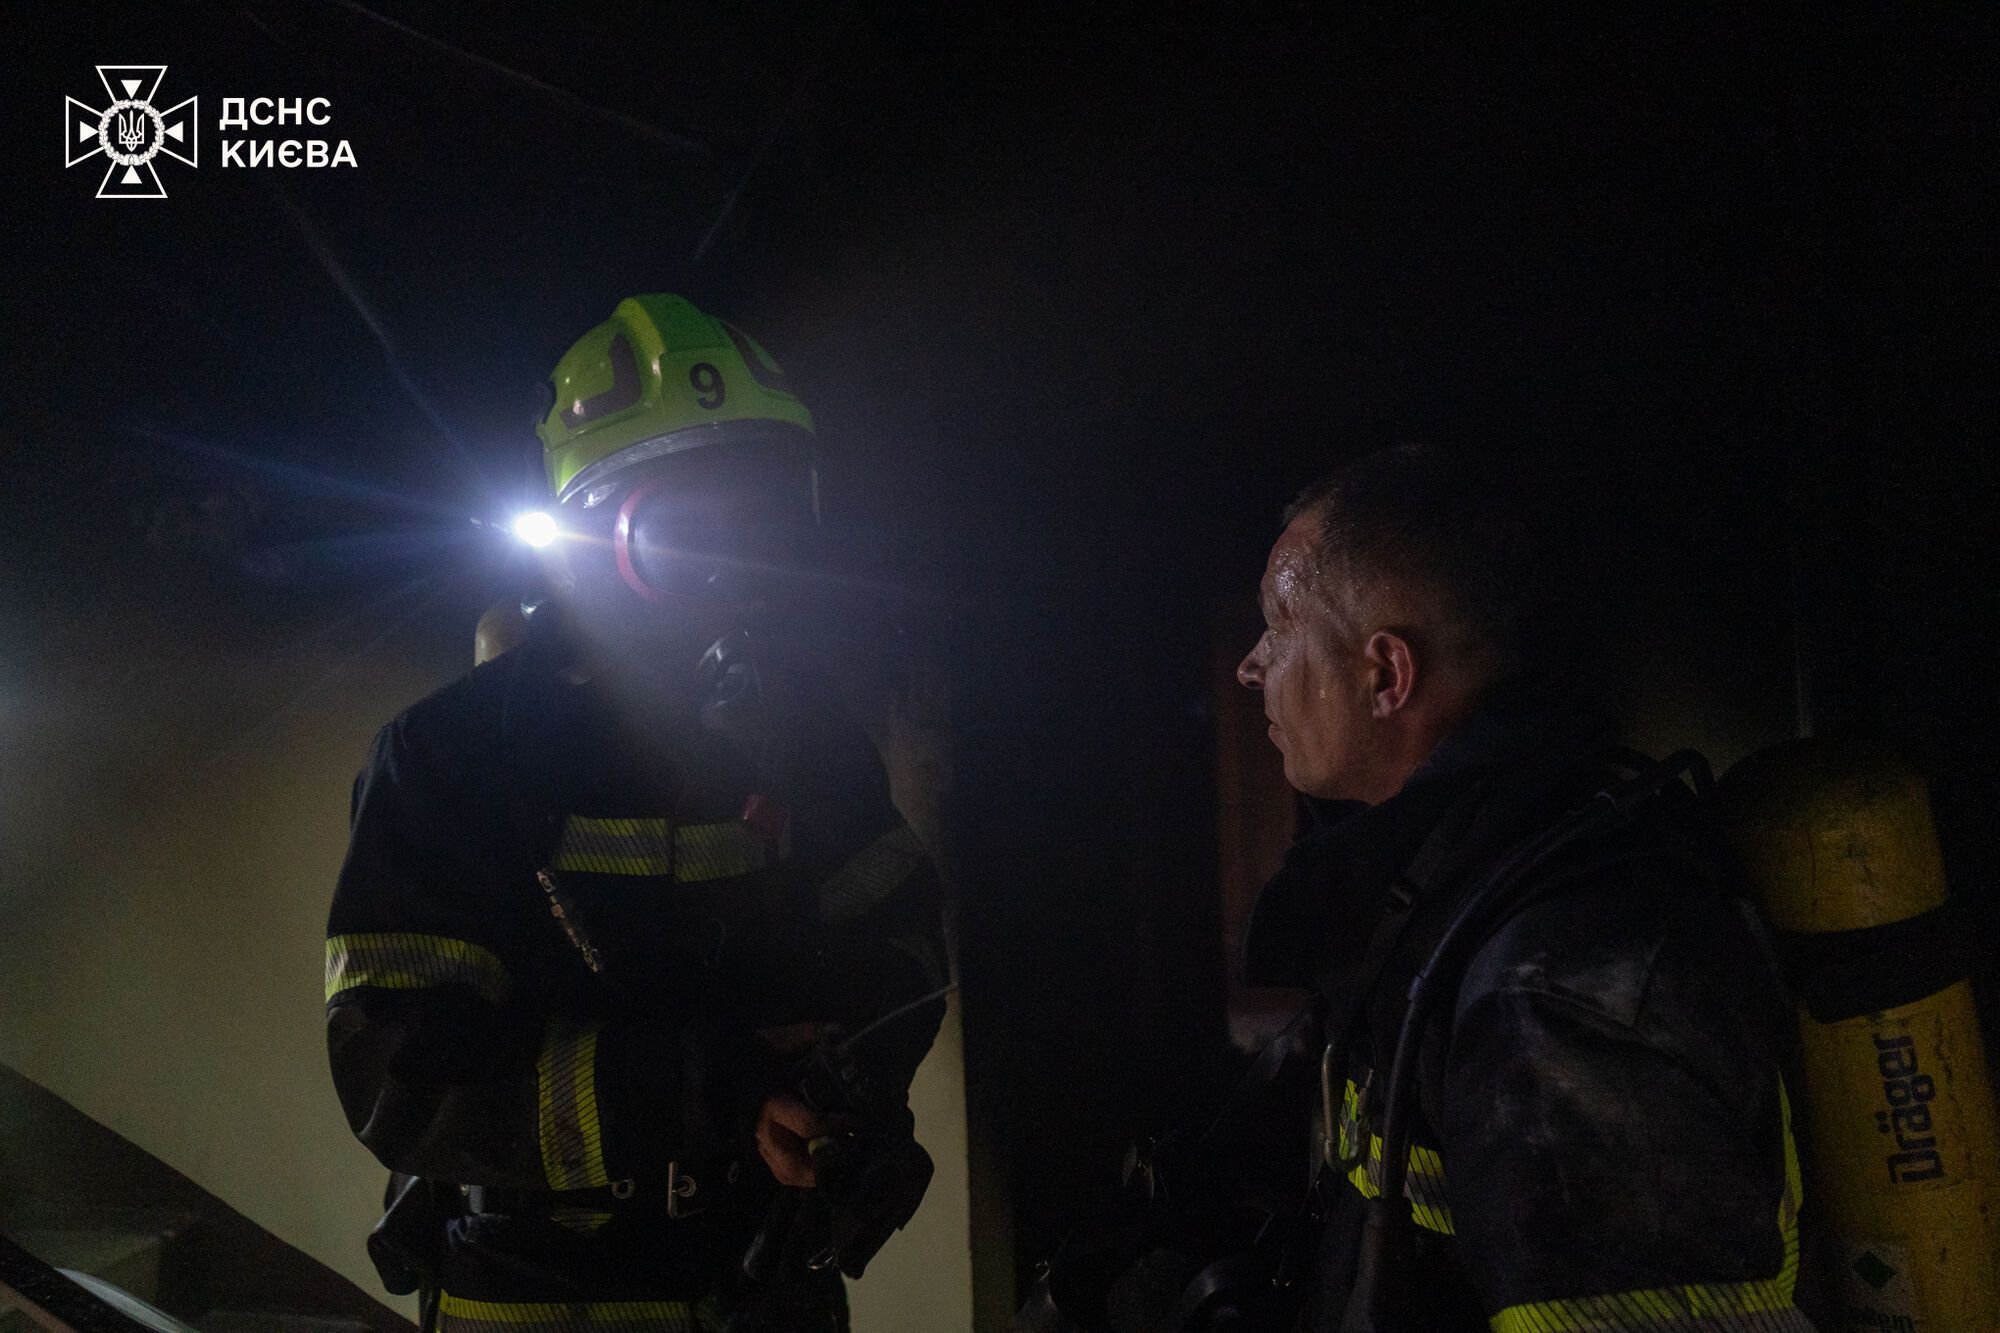 У Києві під час пожежі в багатоповерхівці бійці ДСНС врятували двох осіб. Подробиці, фото і відео queiueiquridzzant